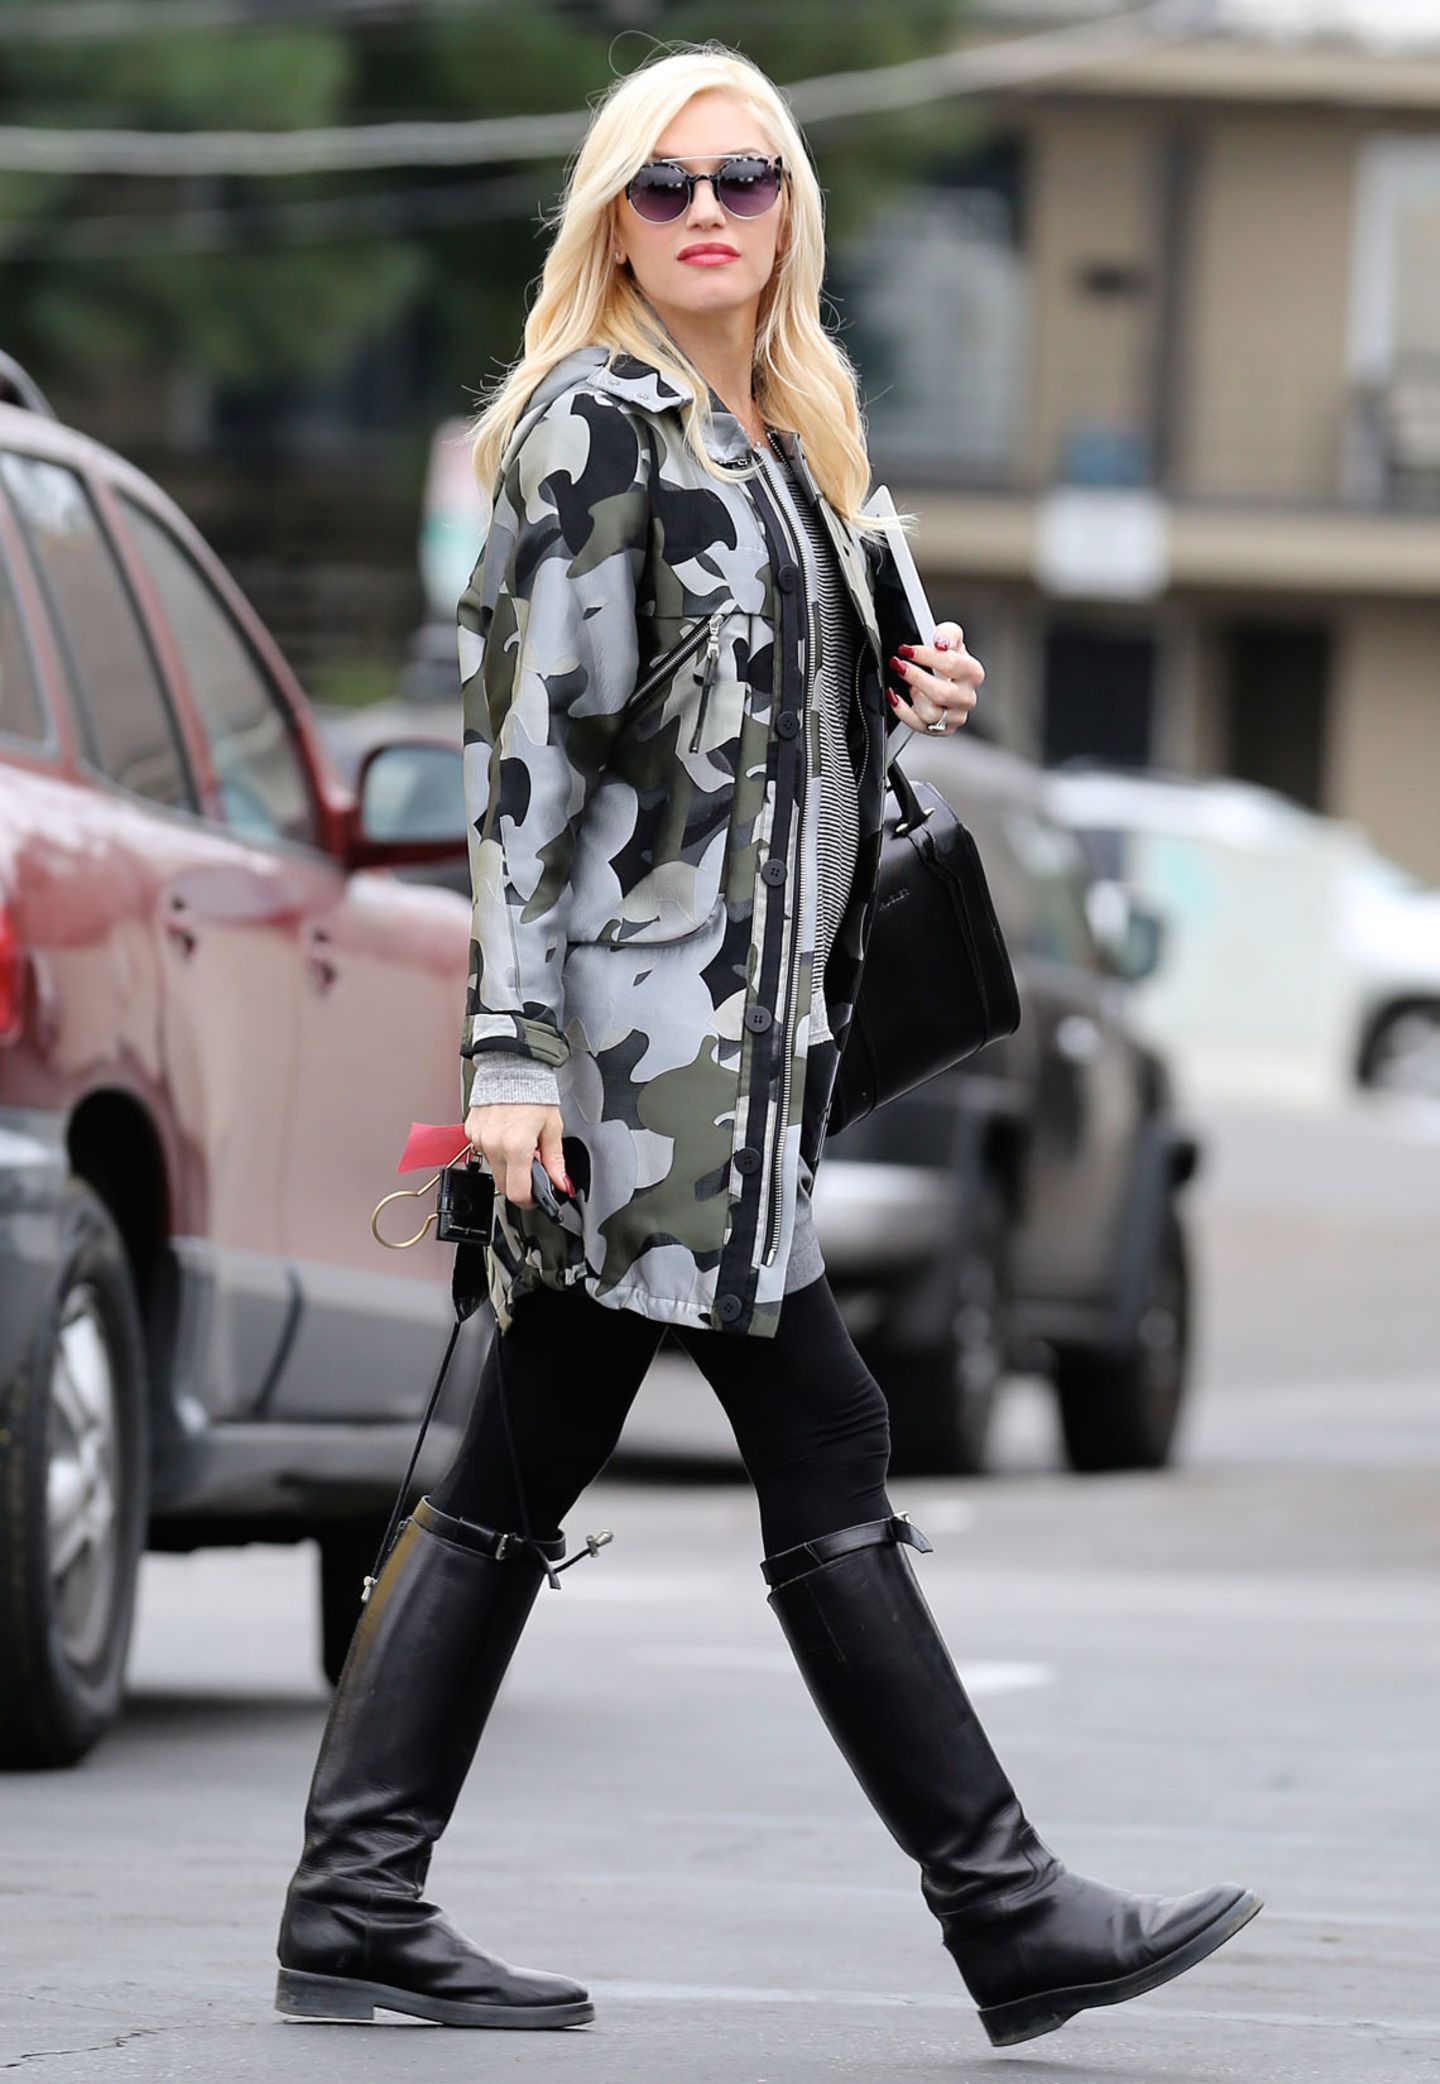 Reiterstiefel und Camouflage-Jacke: Auch der etwas derbere Military-Look steht Gwen Stefani hervorragend.